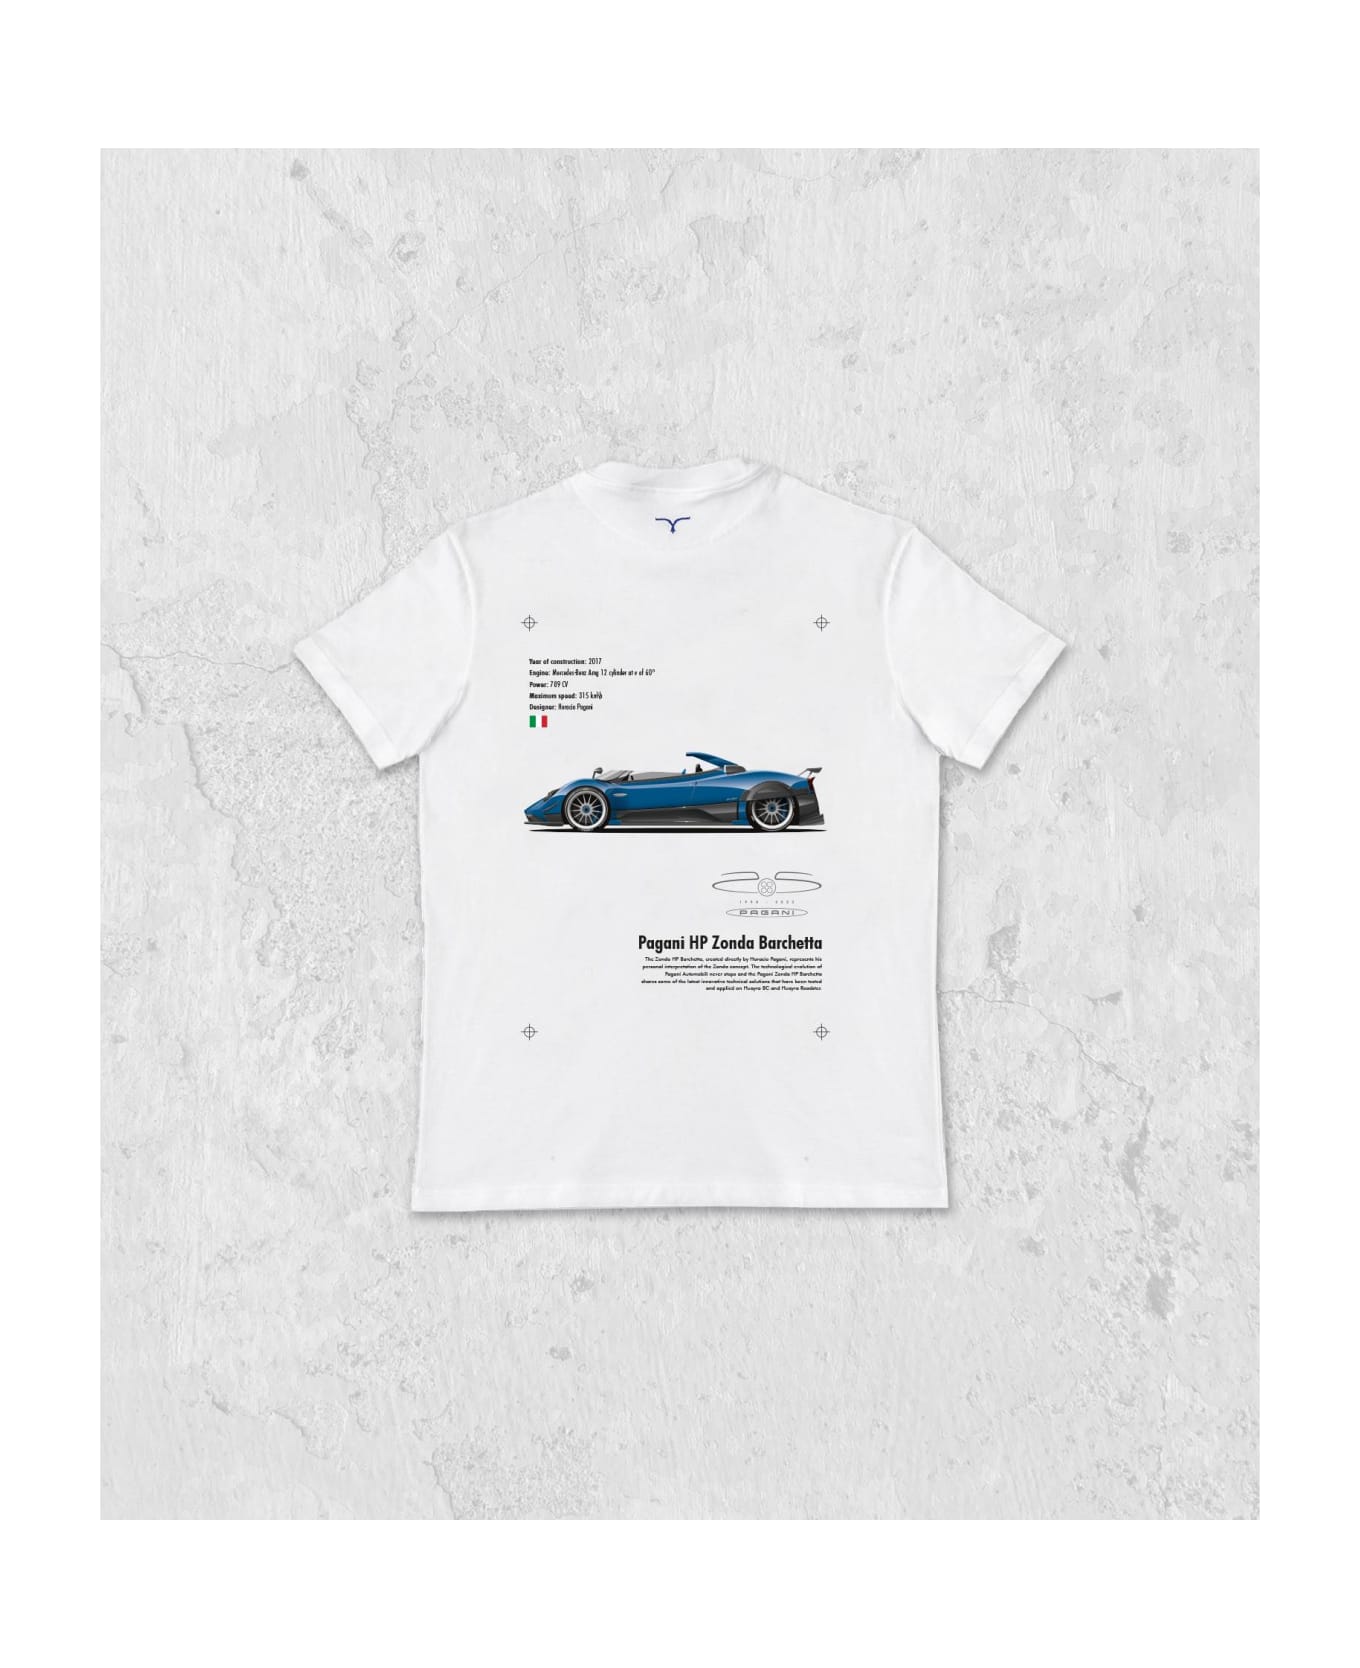 Larusmiani The Automotive Gallery - 02. Pagani Hp Barchetta T-Shirt - White